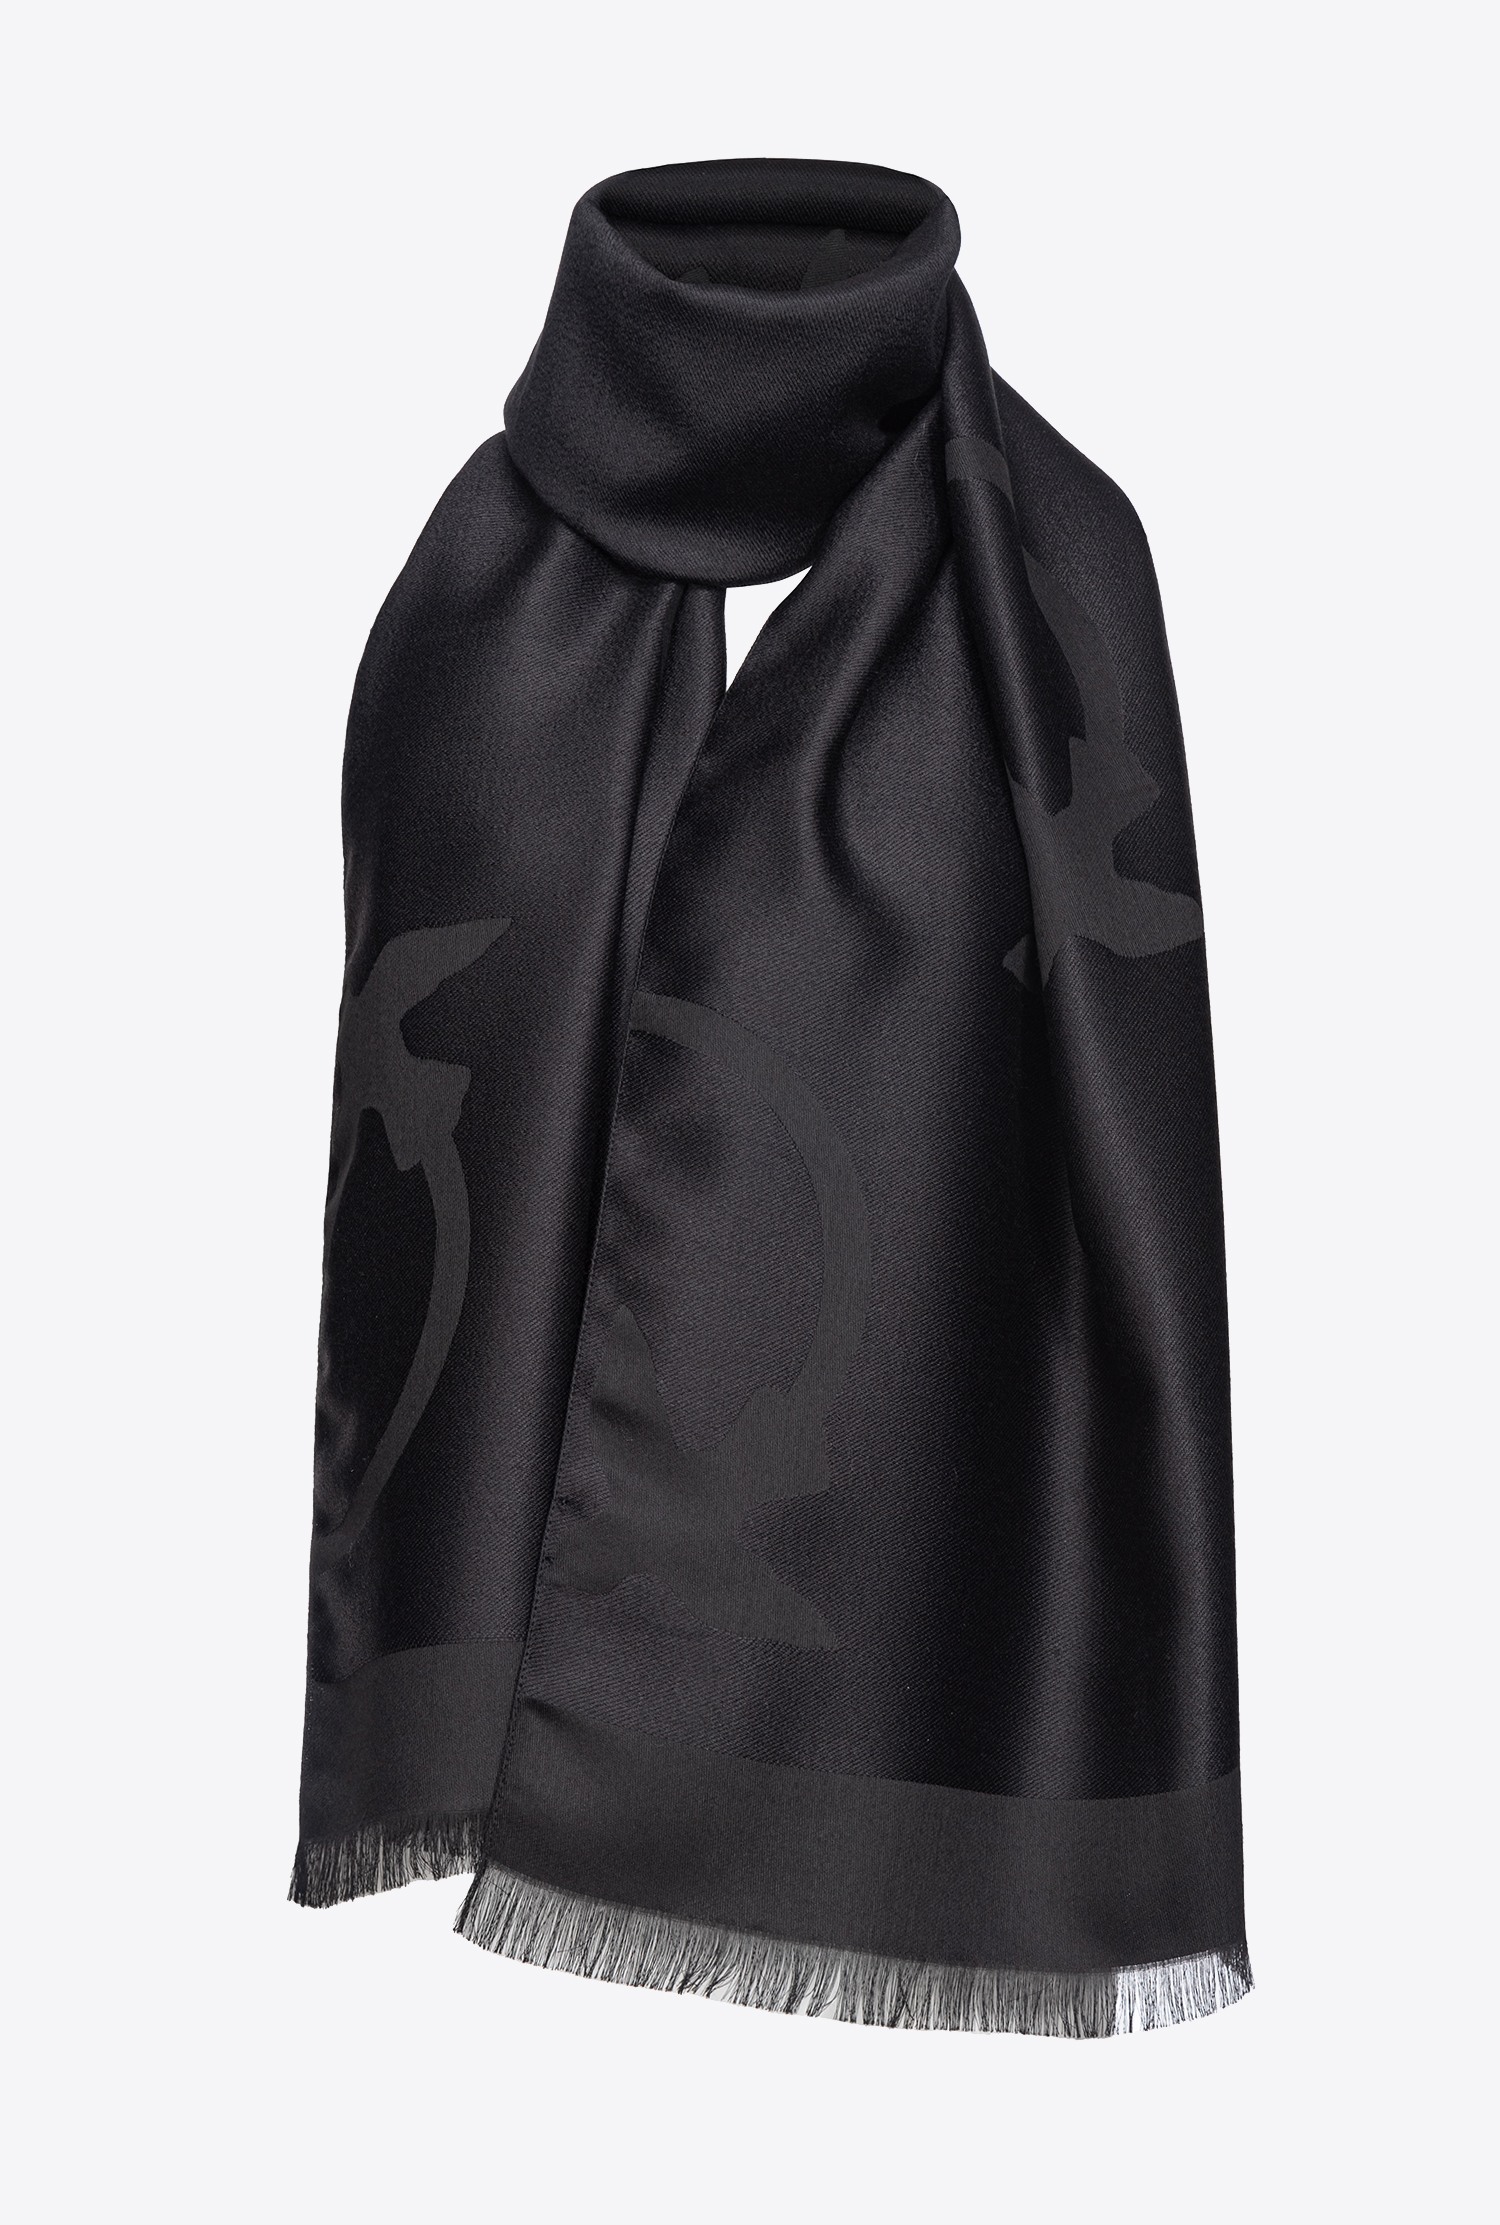 Louis Vuitton Giant Monogram Scarf Cashmere/Wool Black/White